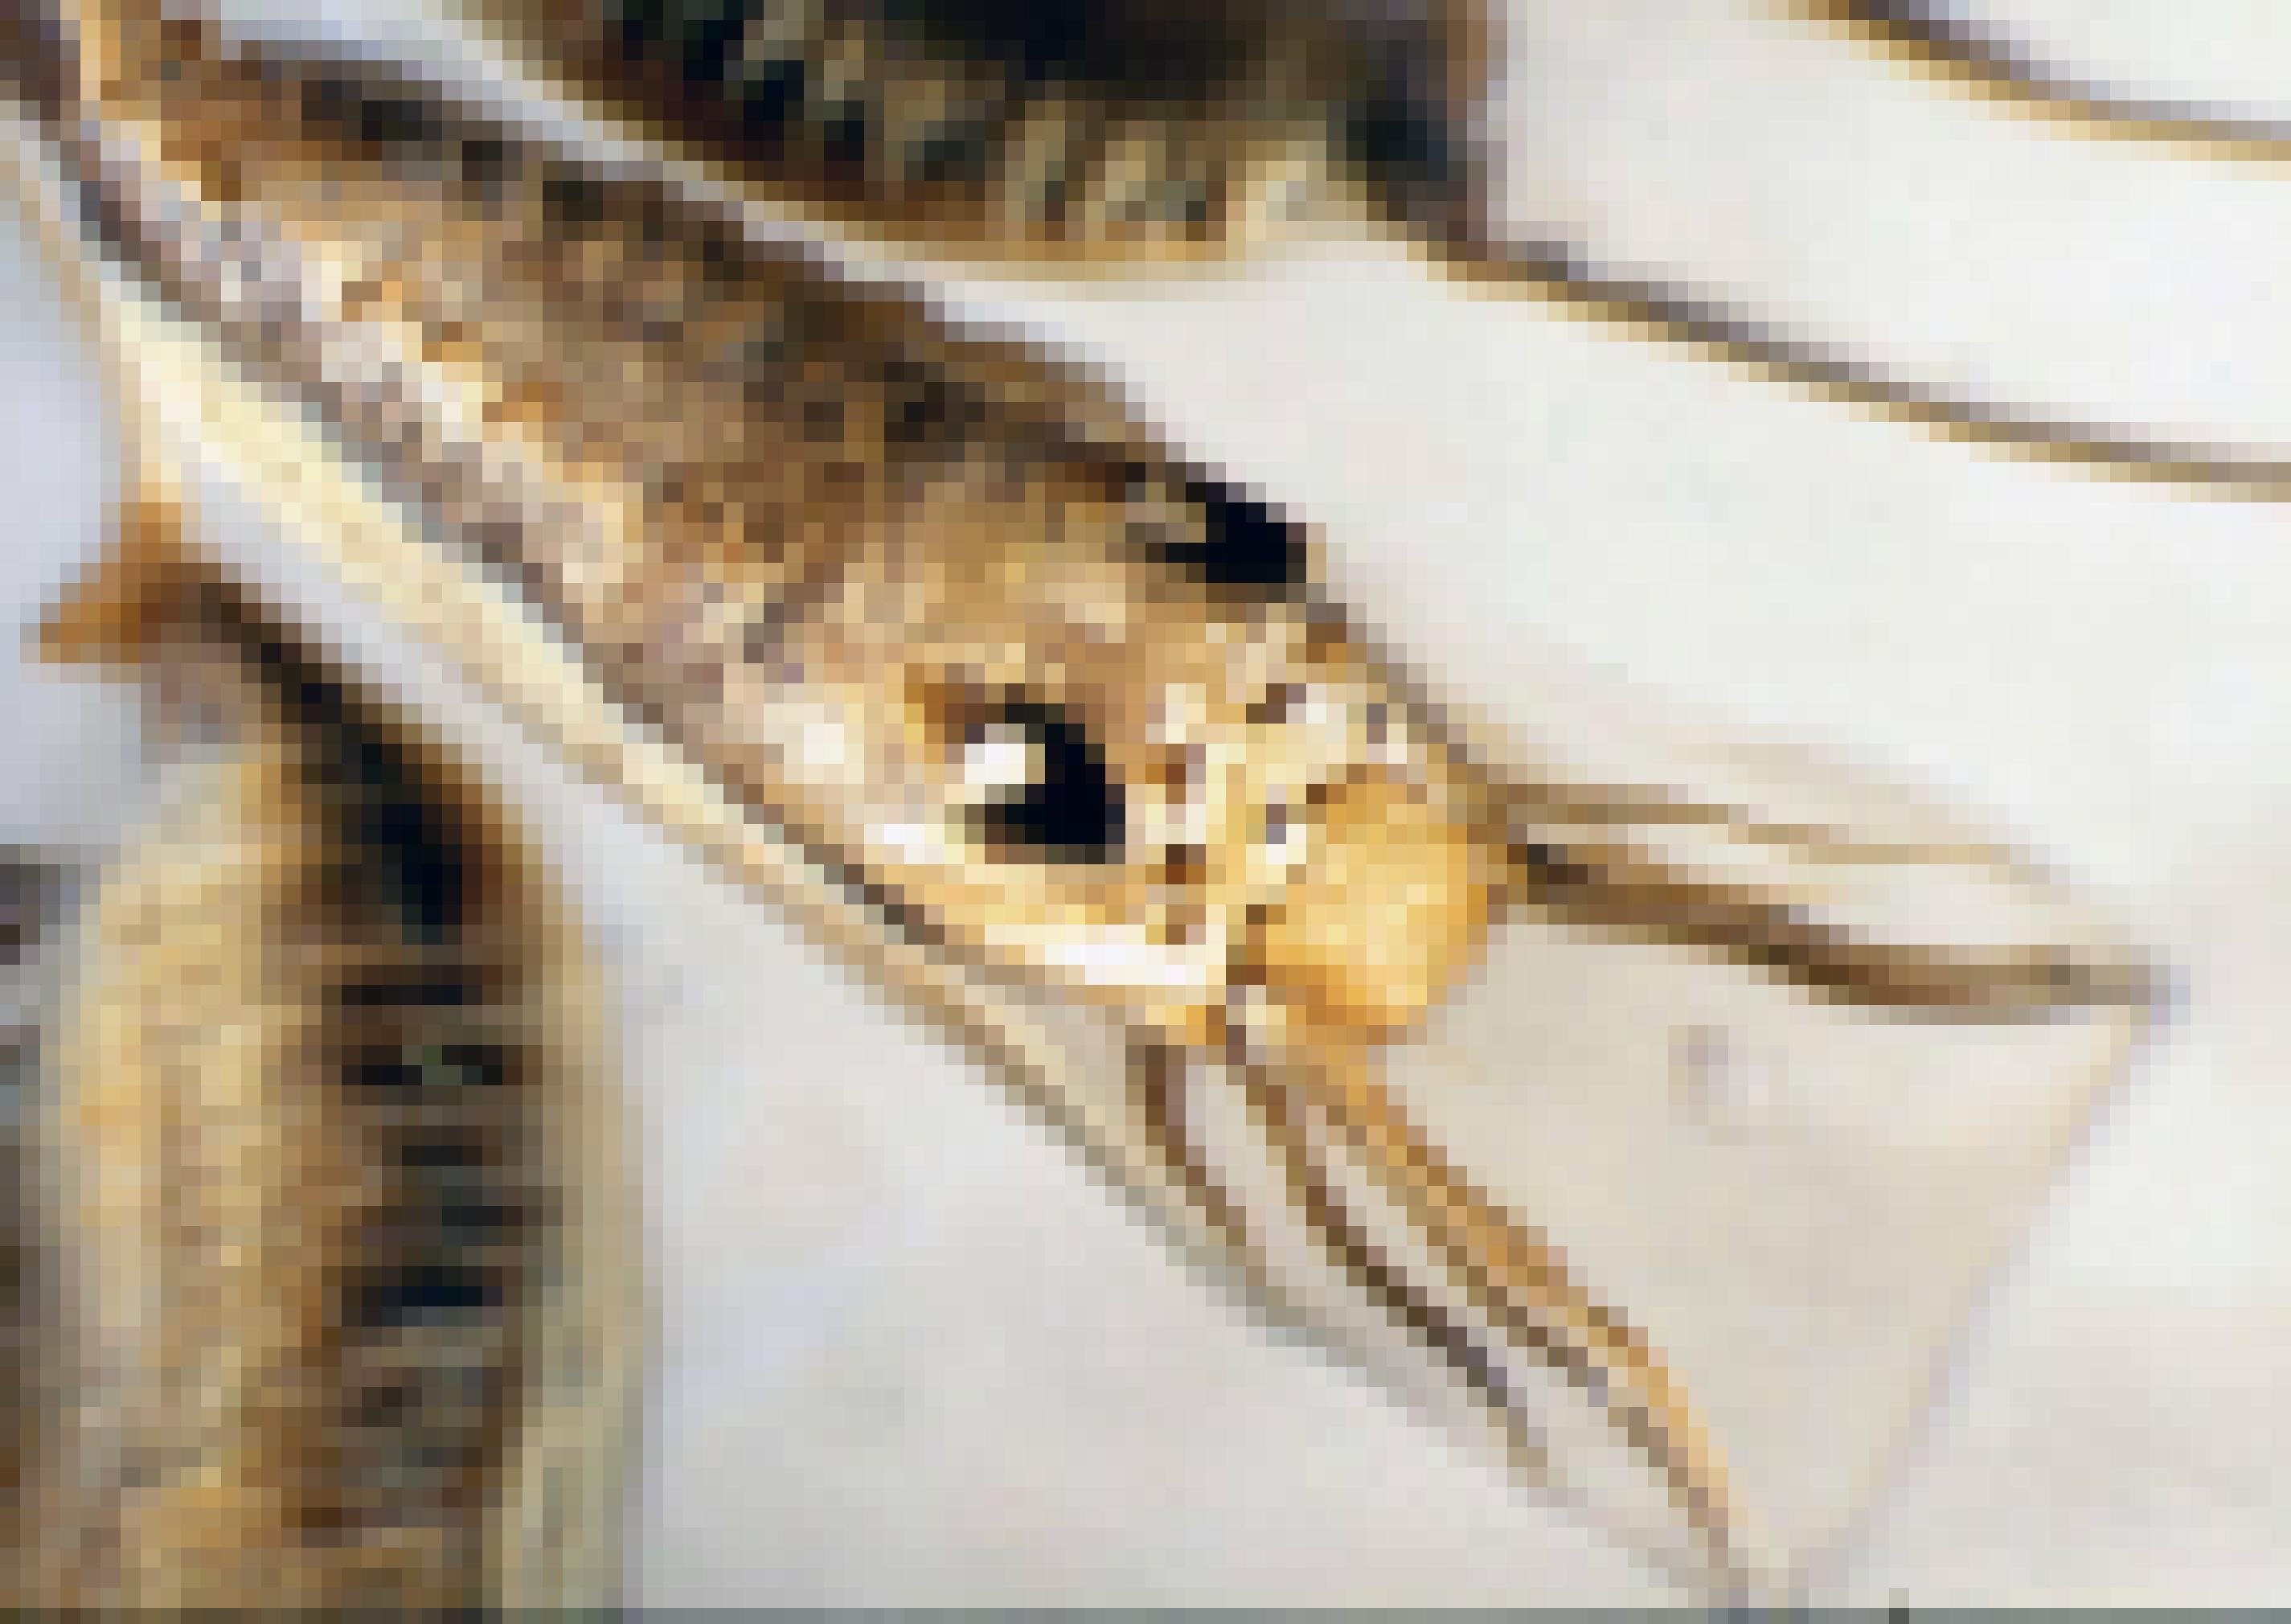 Ein täuschend echtes Insekt mit großen Augen und Beinen, das aber auf ein Schleimpaket gemalt ist, in dem sich eine Muschelbrut verbirgt.